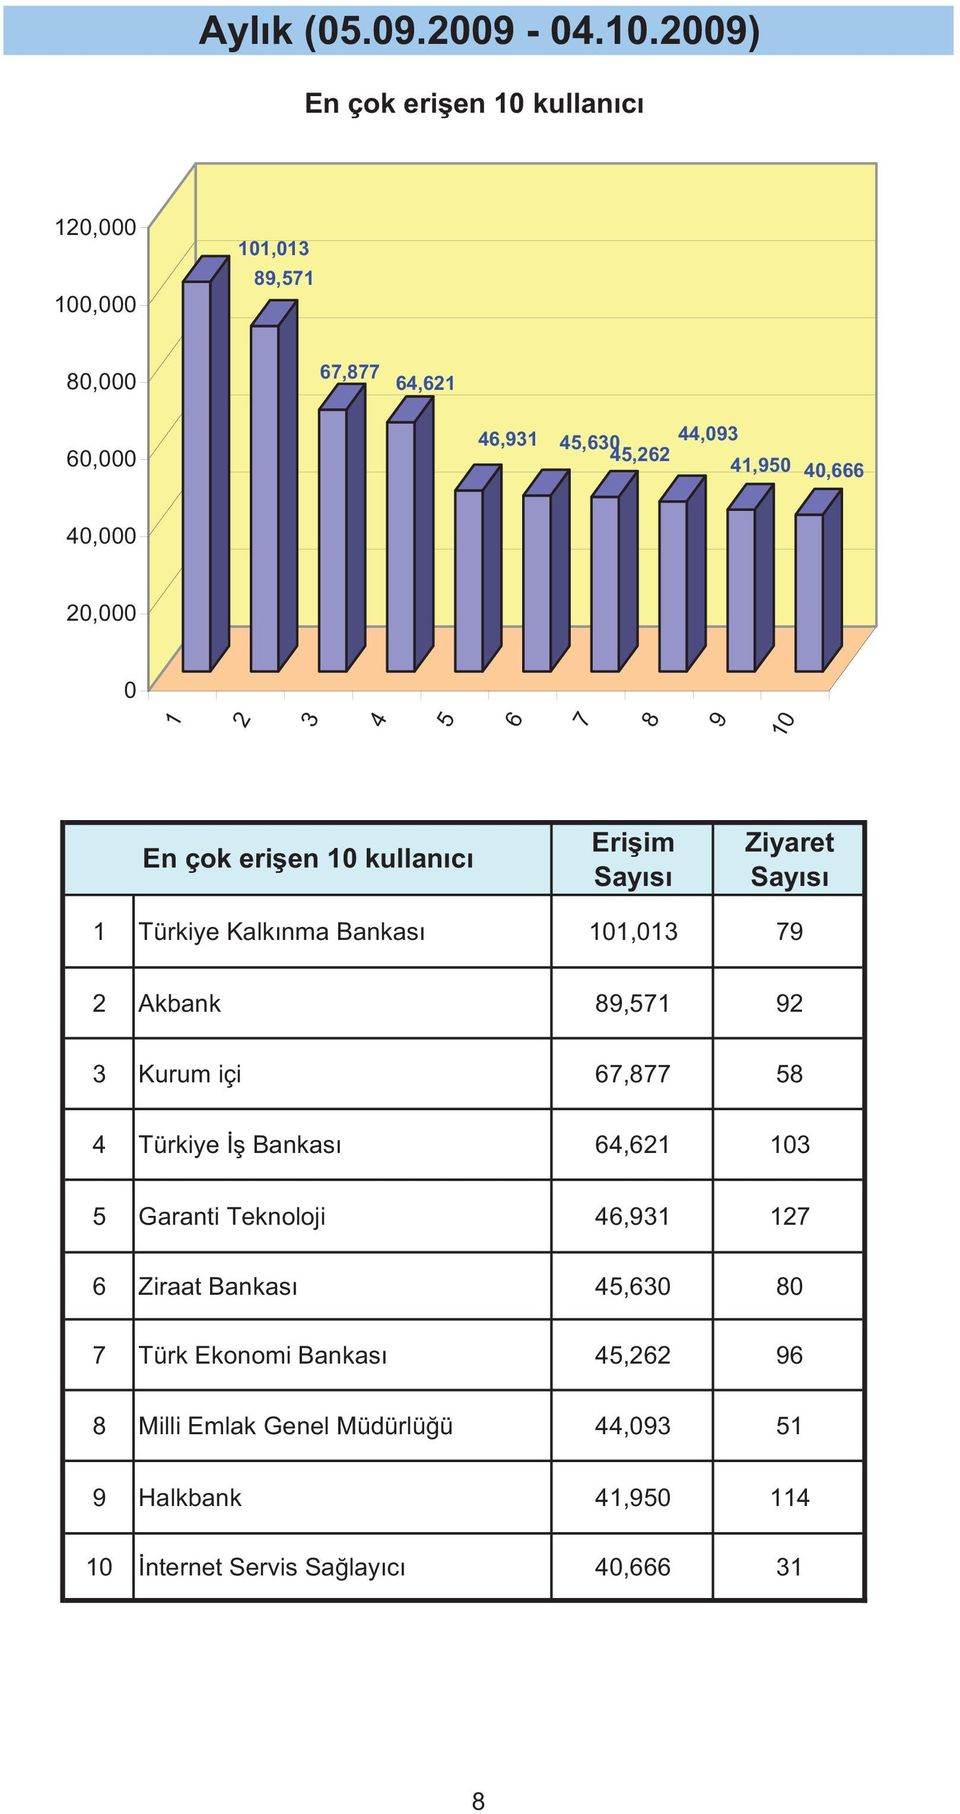 Eri im Türkiye Kalkınma Bankası, Akbank, Kurum içi, Türkiye